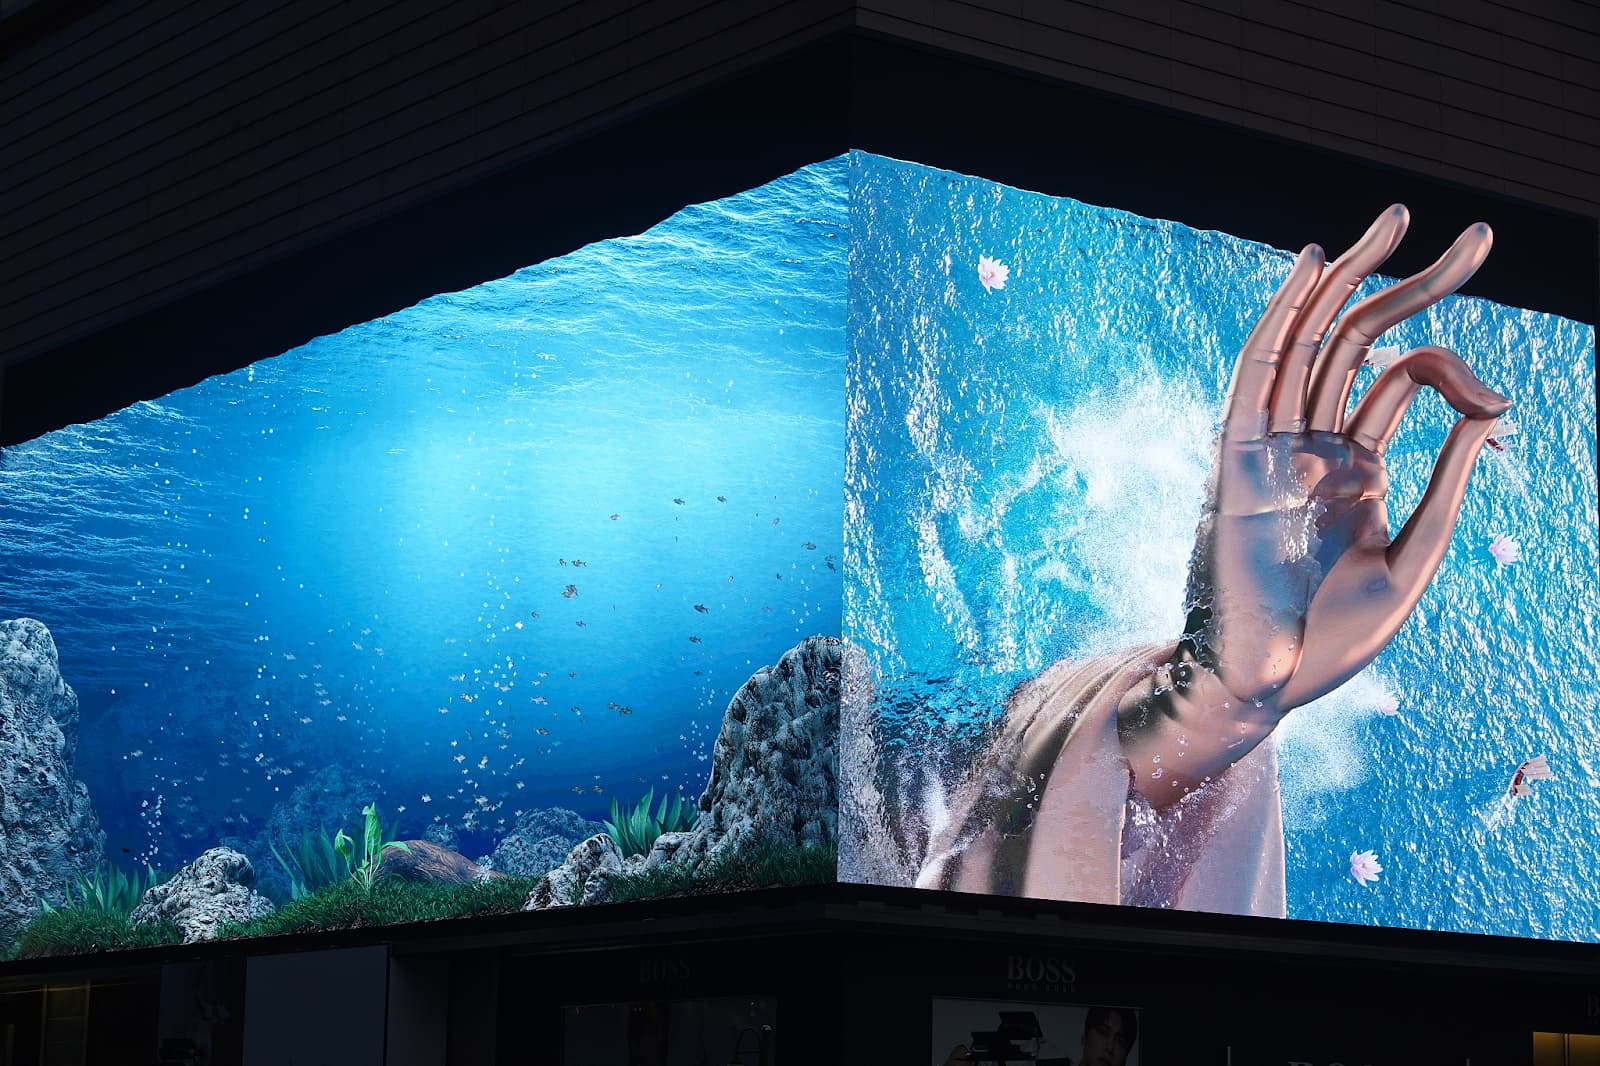  Quảng cáo LED 3D sử dụng 2 góc khác nhau của màn hình LED 2 chiều